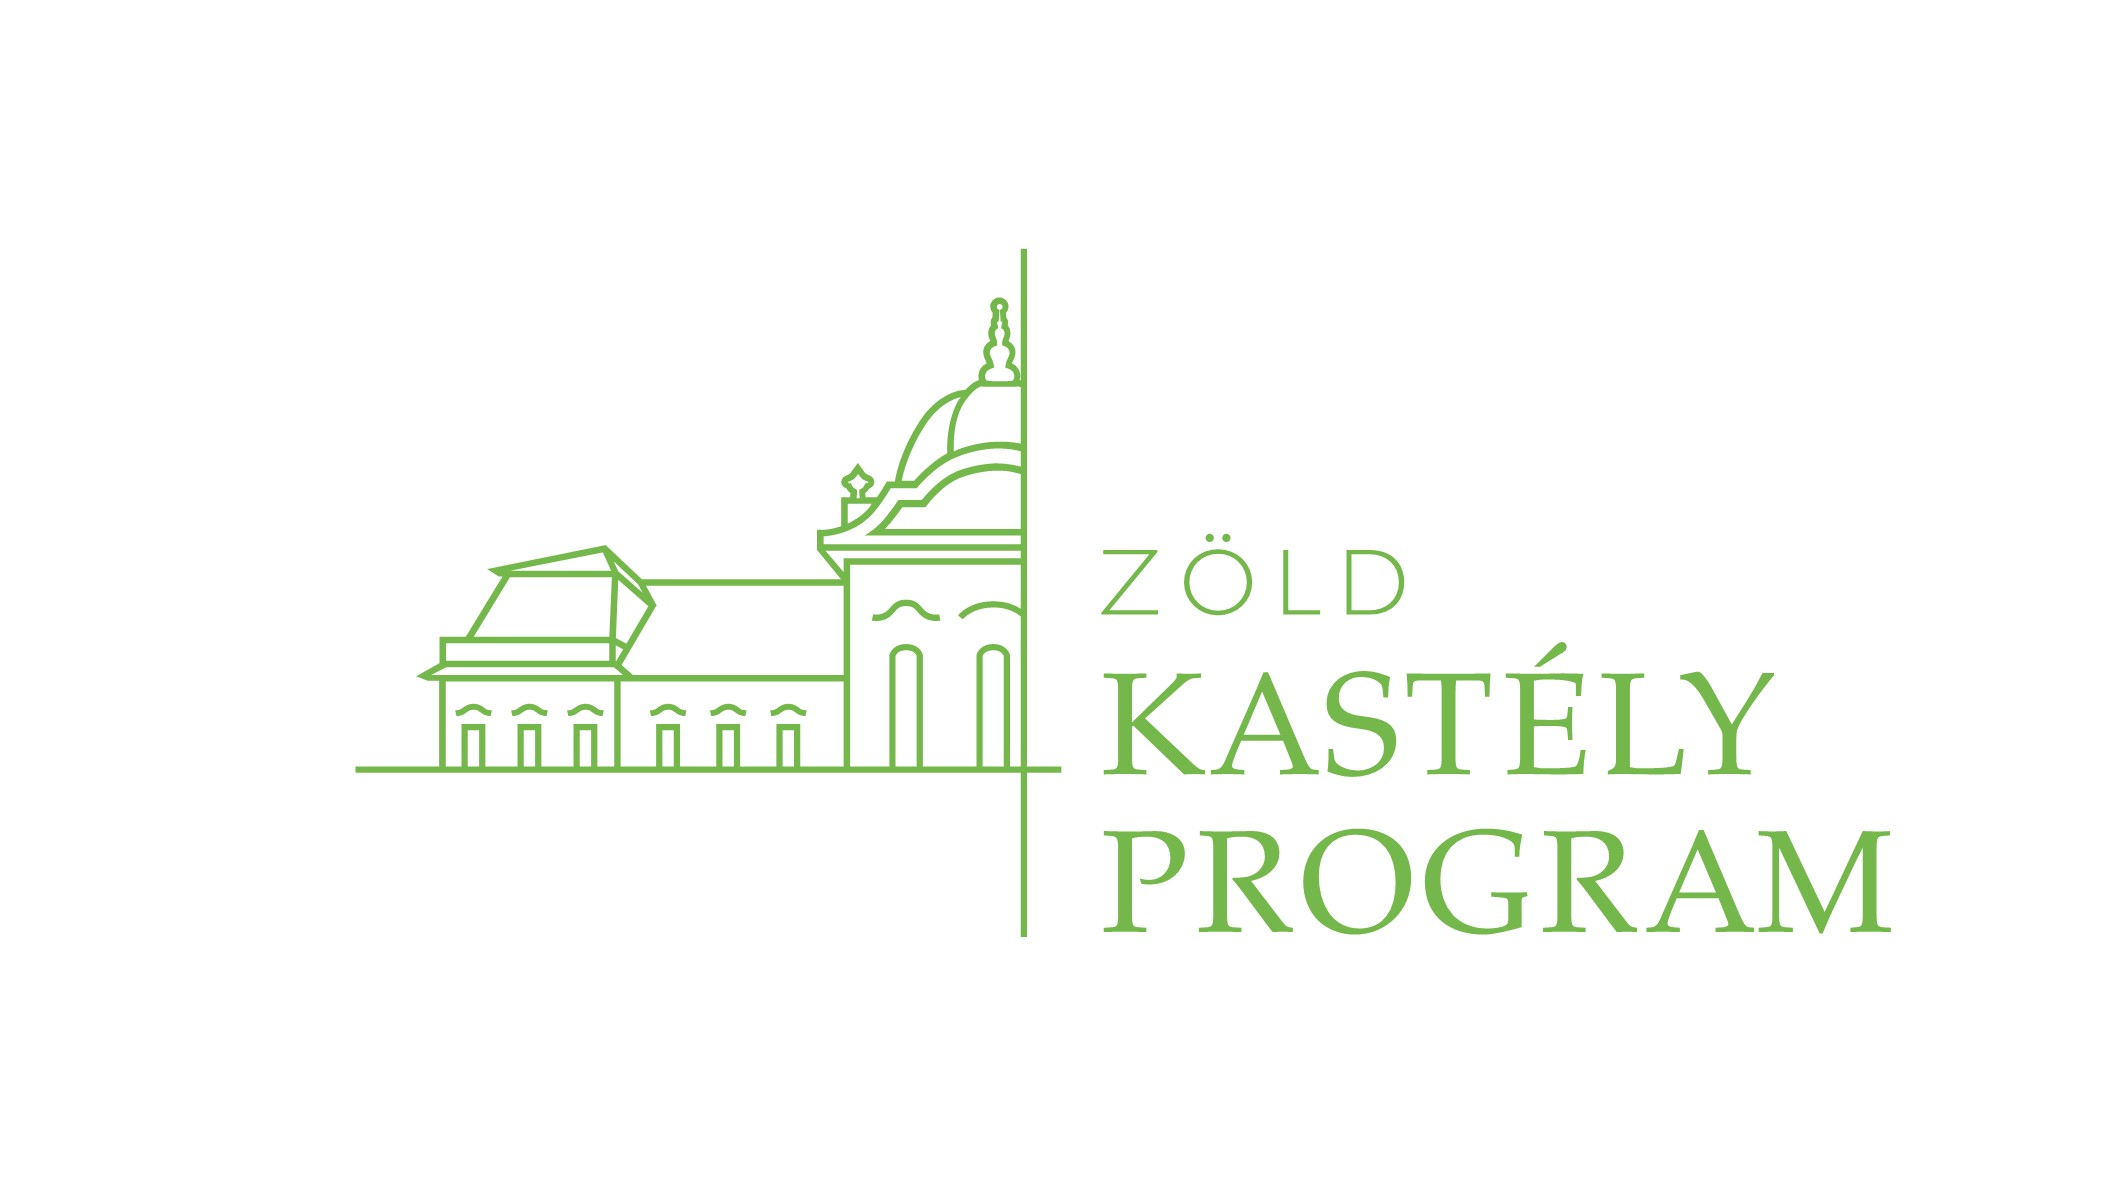 11_24_zold_kastely_program.jpg